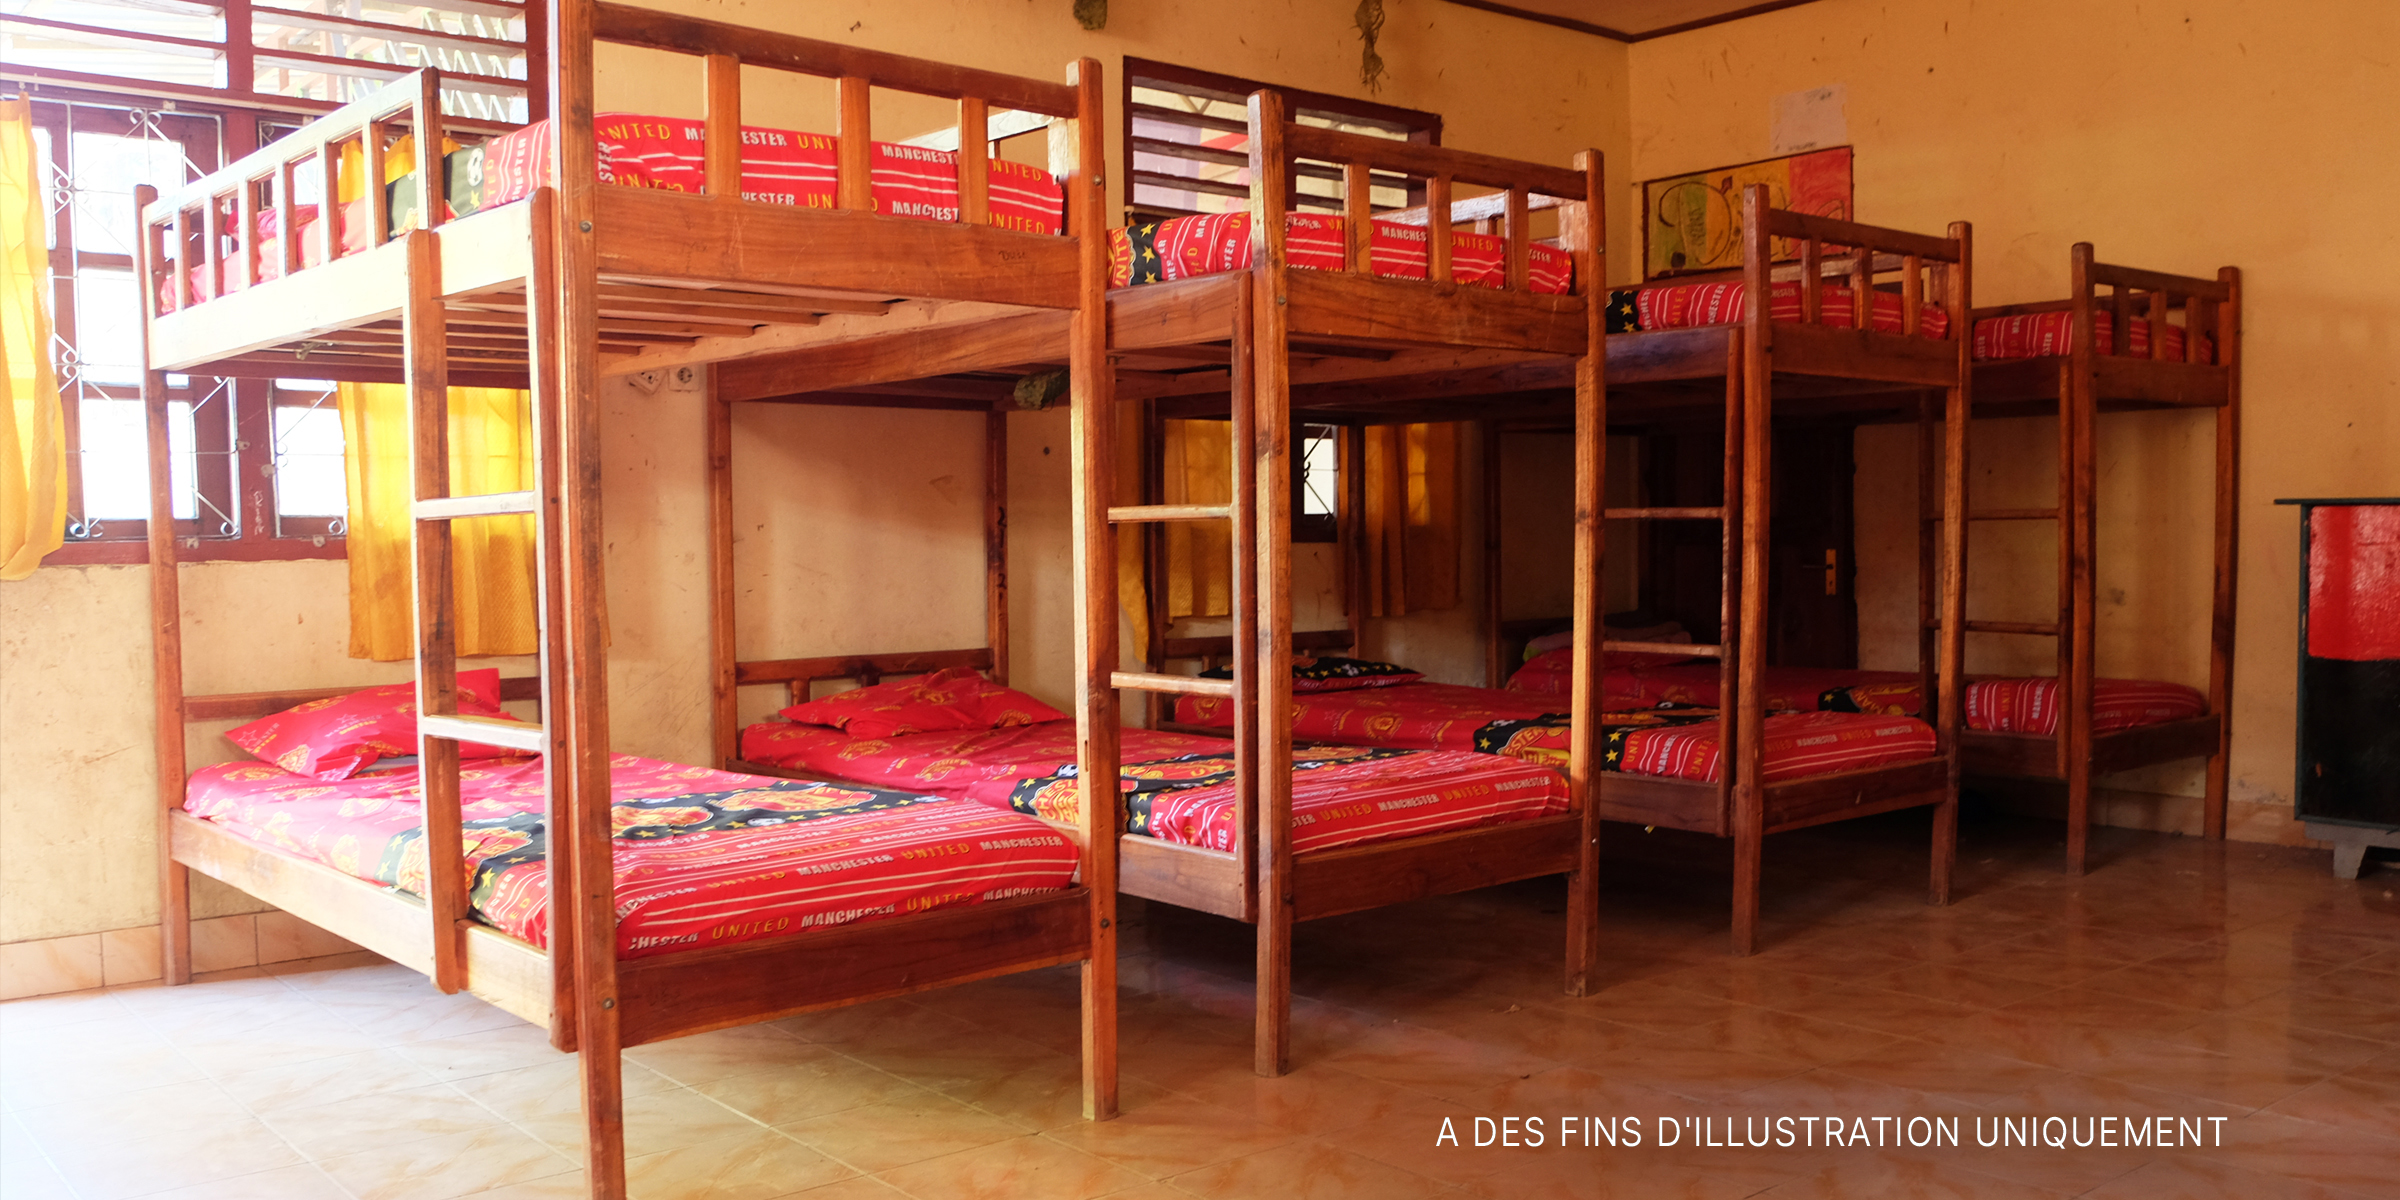 Plusieurs lits superposés dans une chambre. | Source : Shutterstock